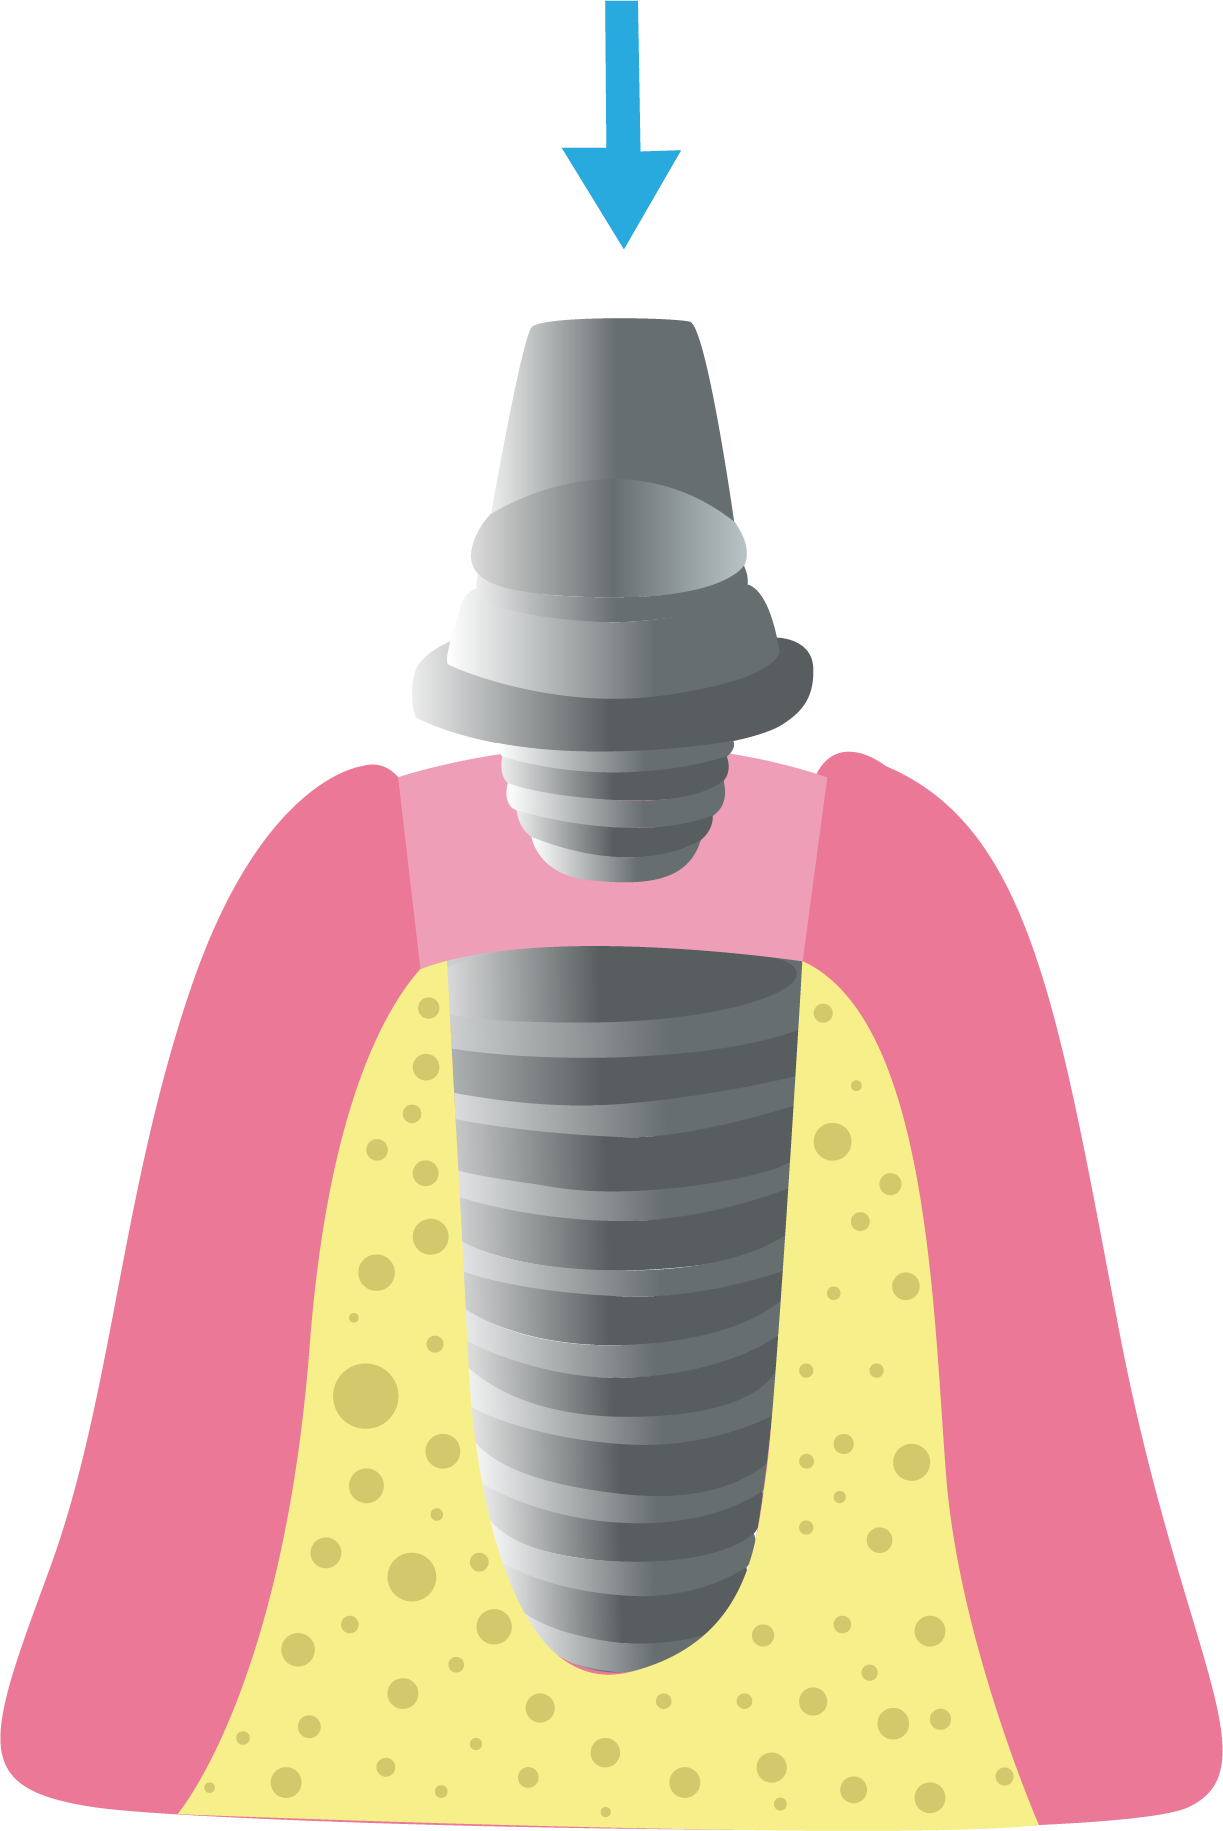 Partes de un implante dental - Top Dental